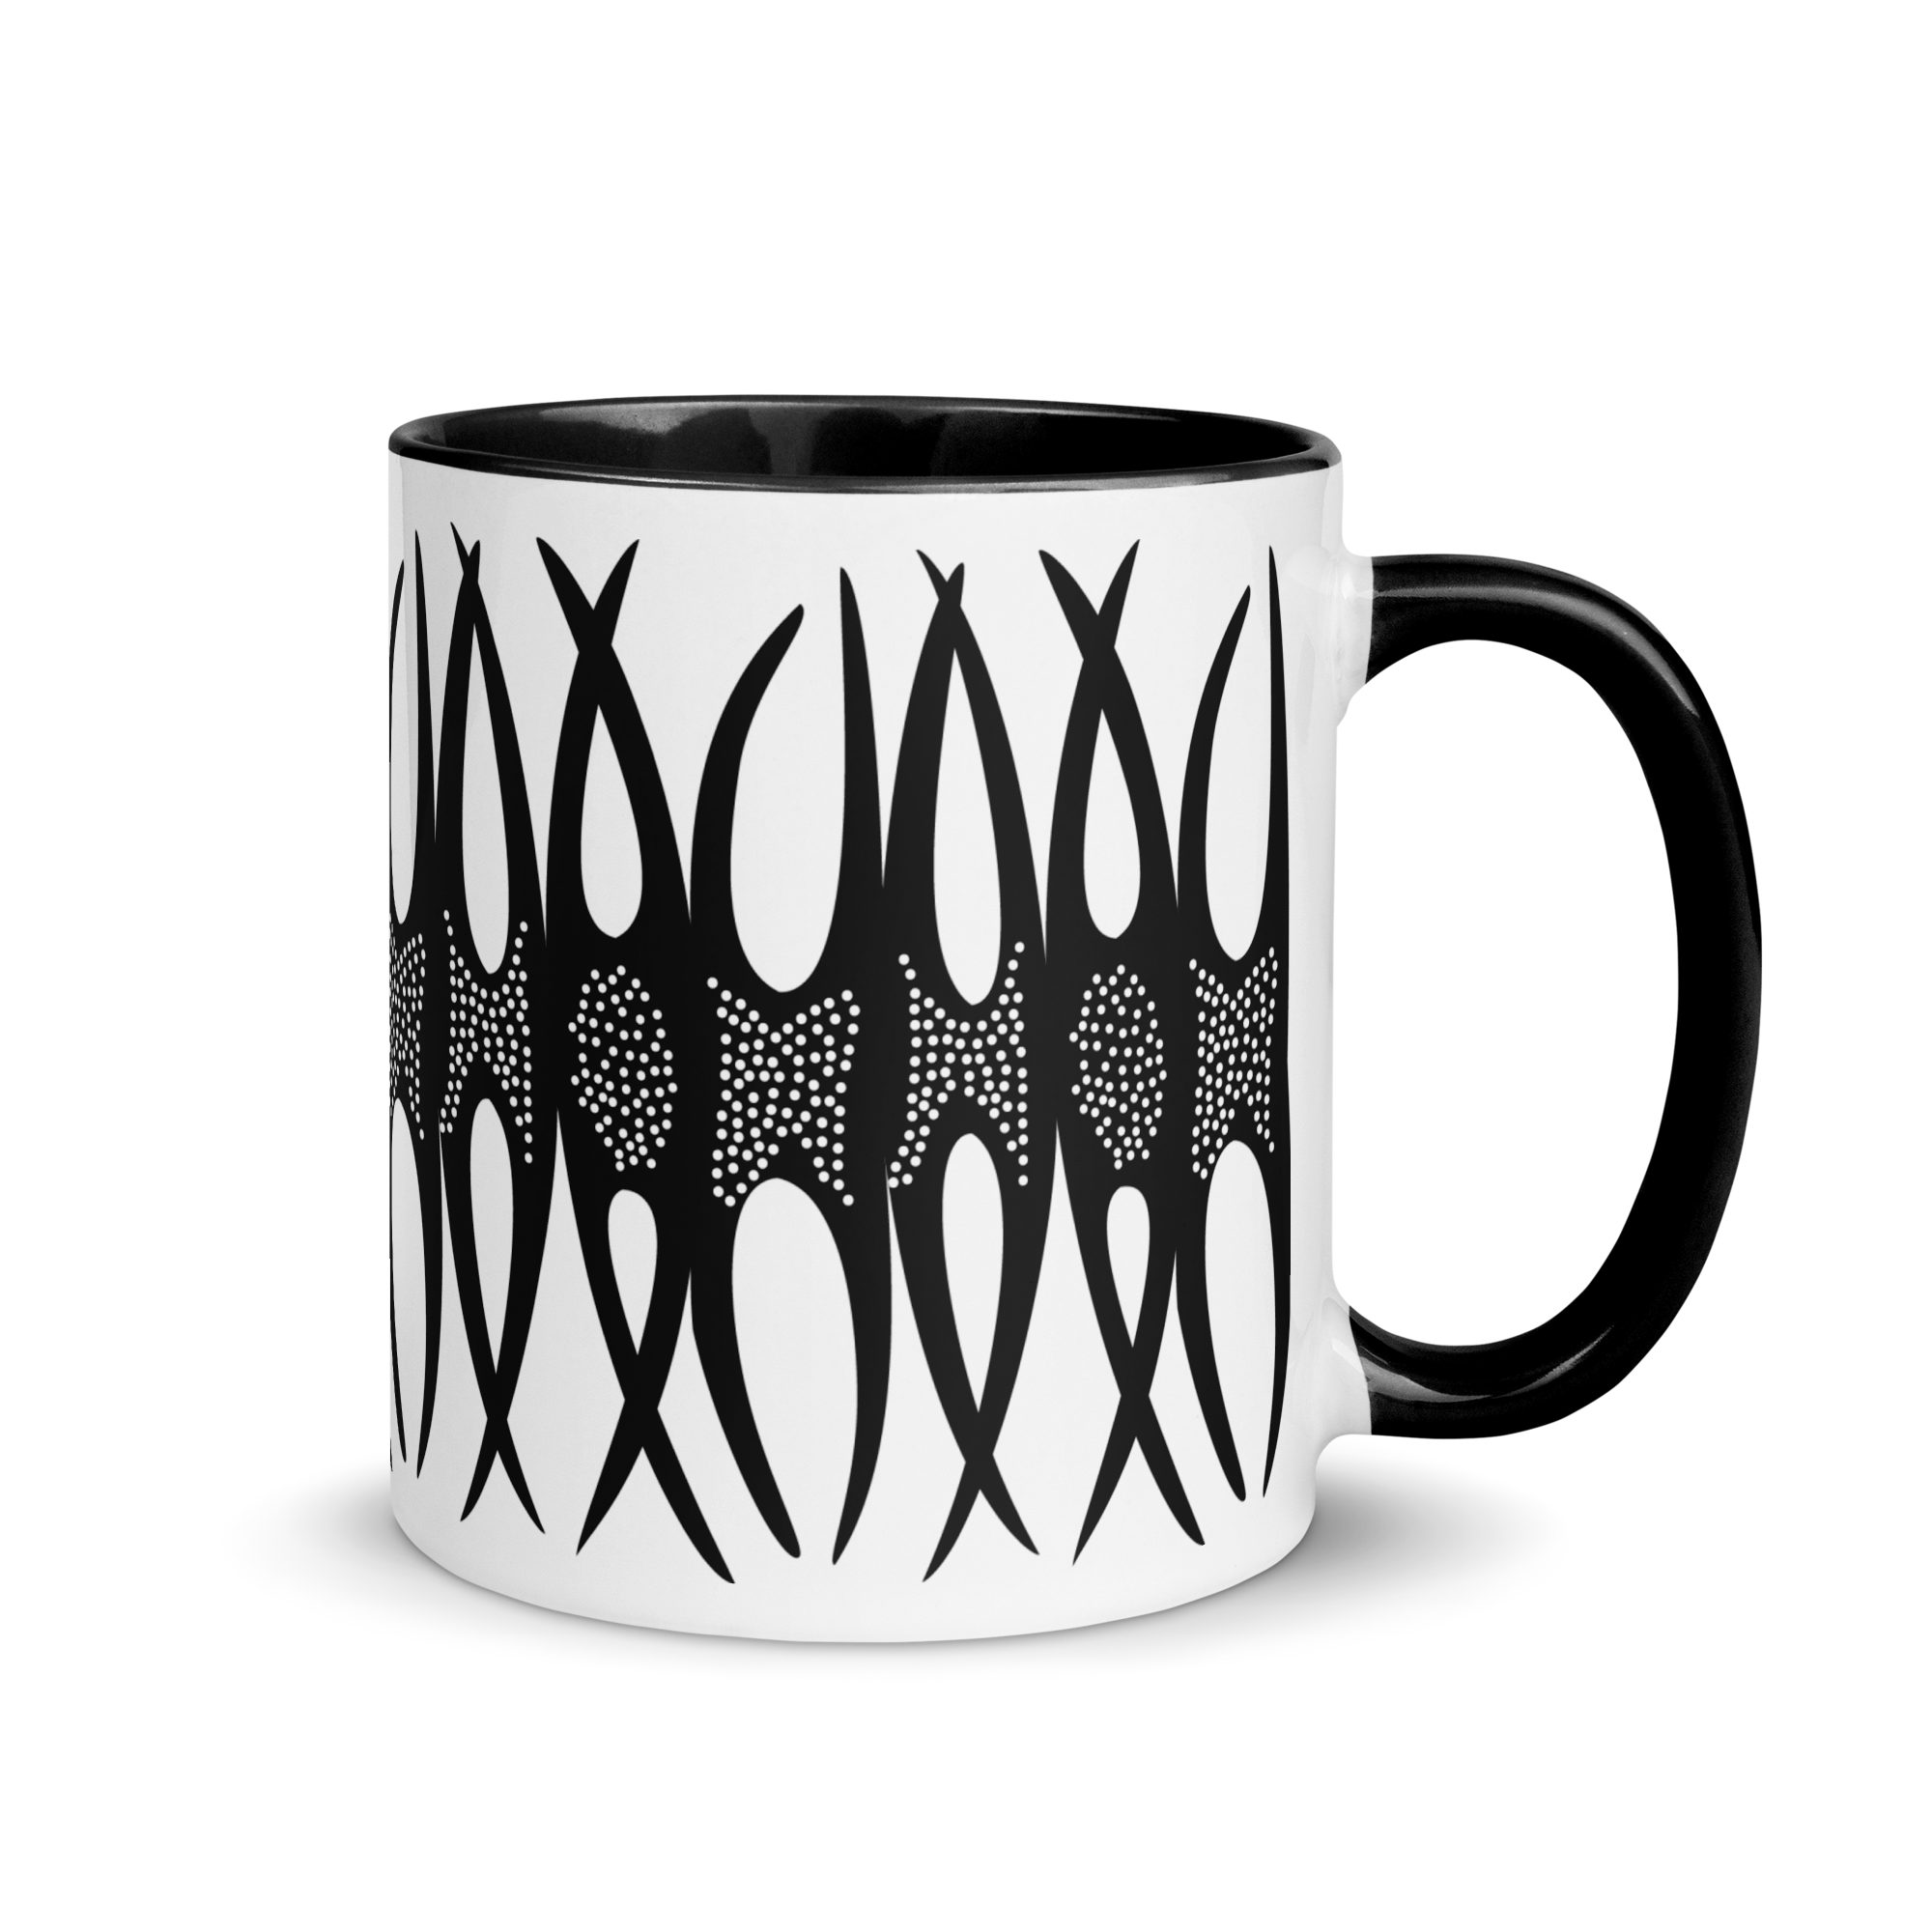 white-ceramic-mug-with-color-inside-black-11-oz-right-65e473d6caf4f.png